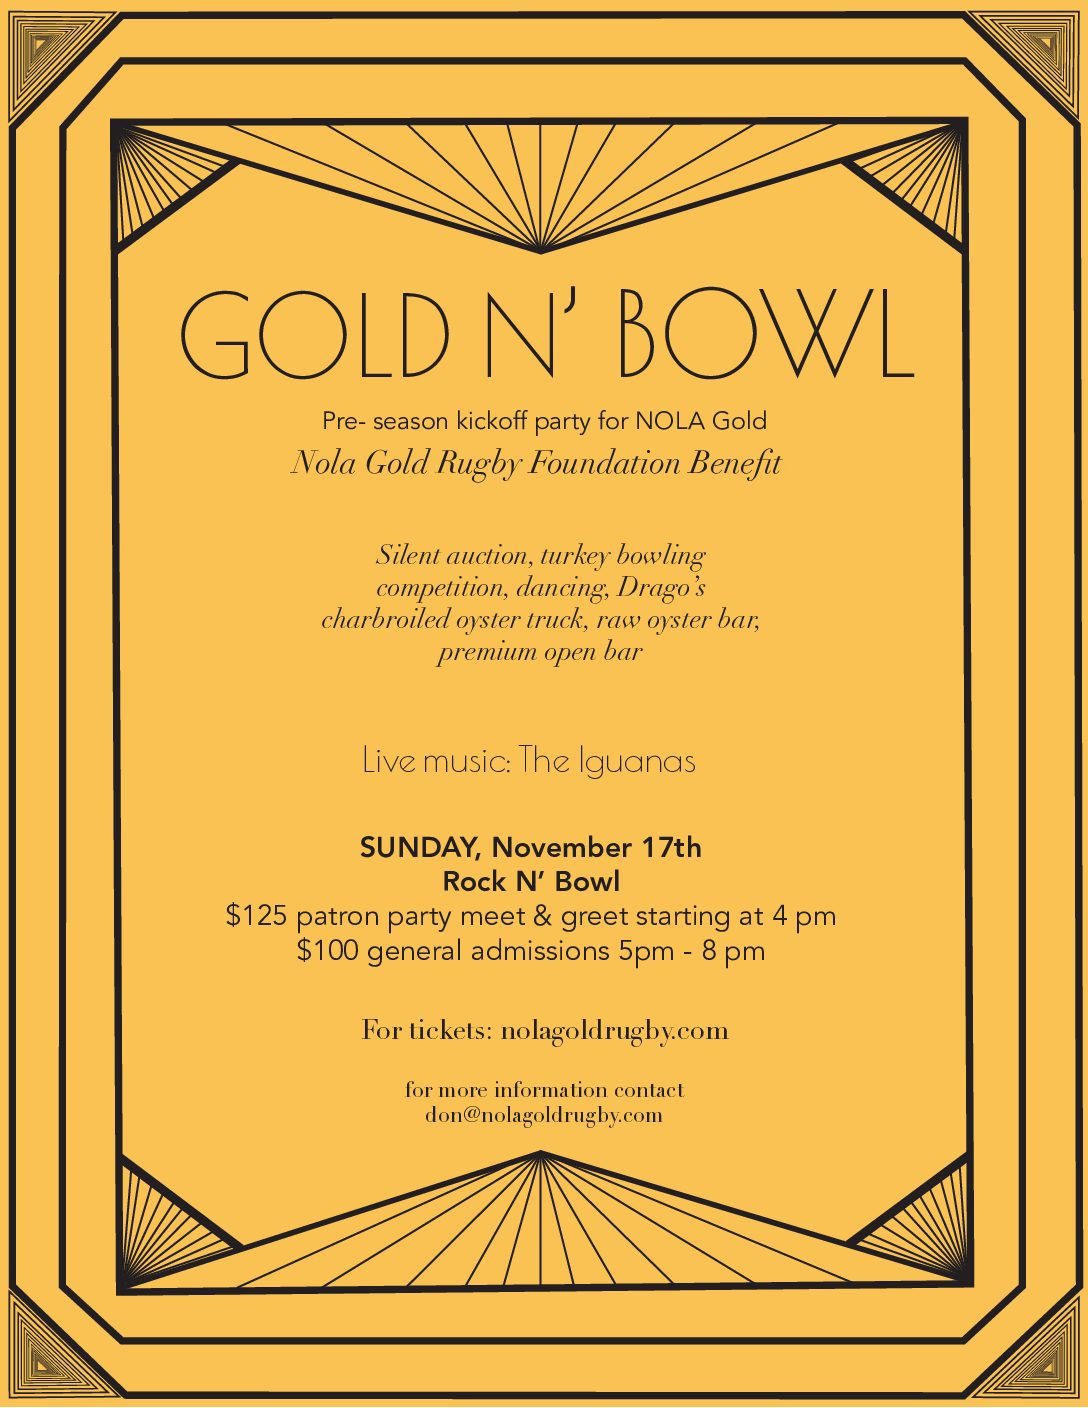 Gold & Bowl – Preseason Kickoff Party with NOLA Gold